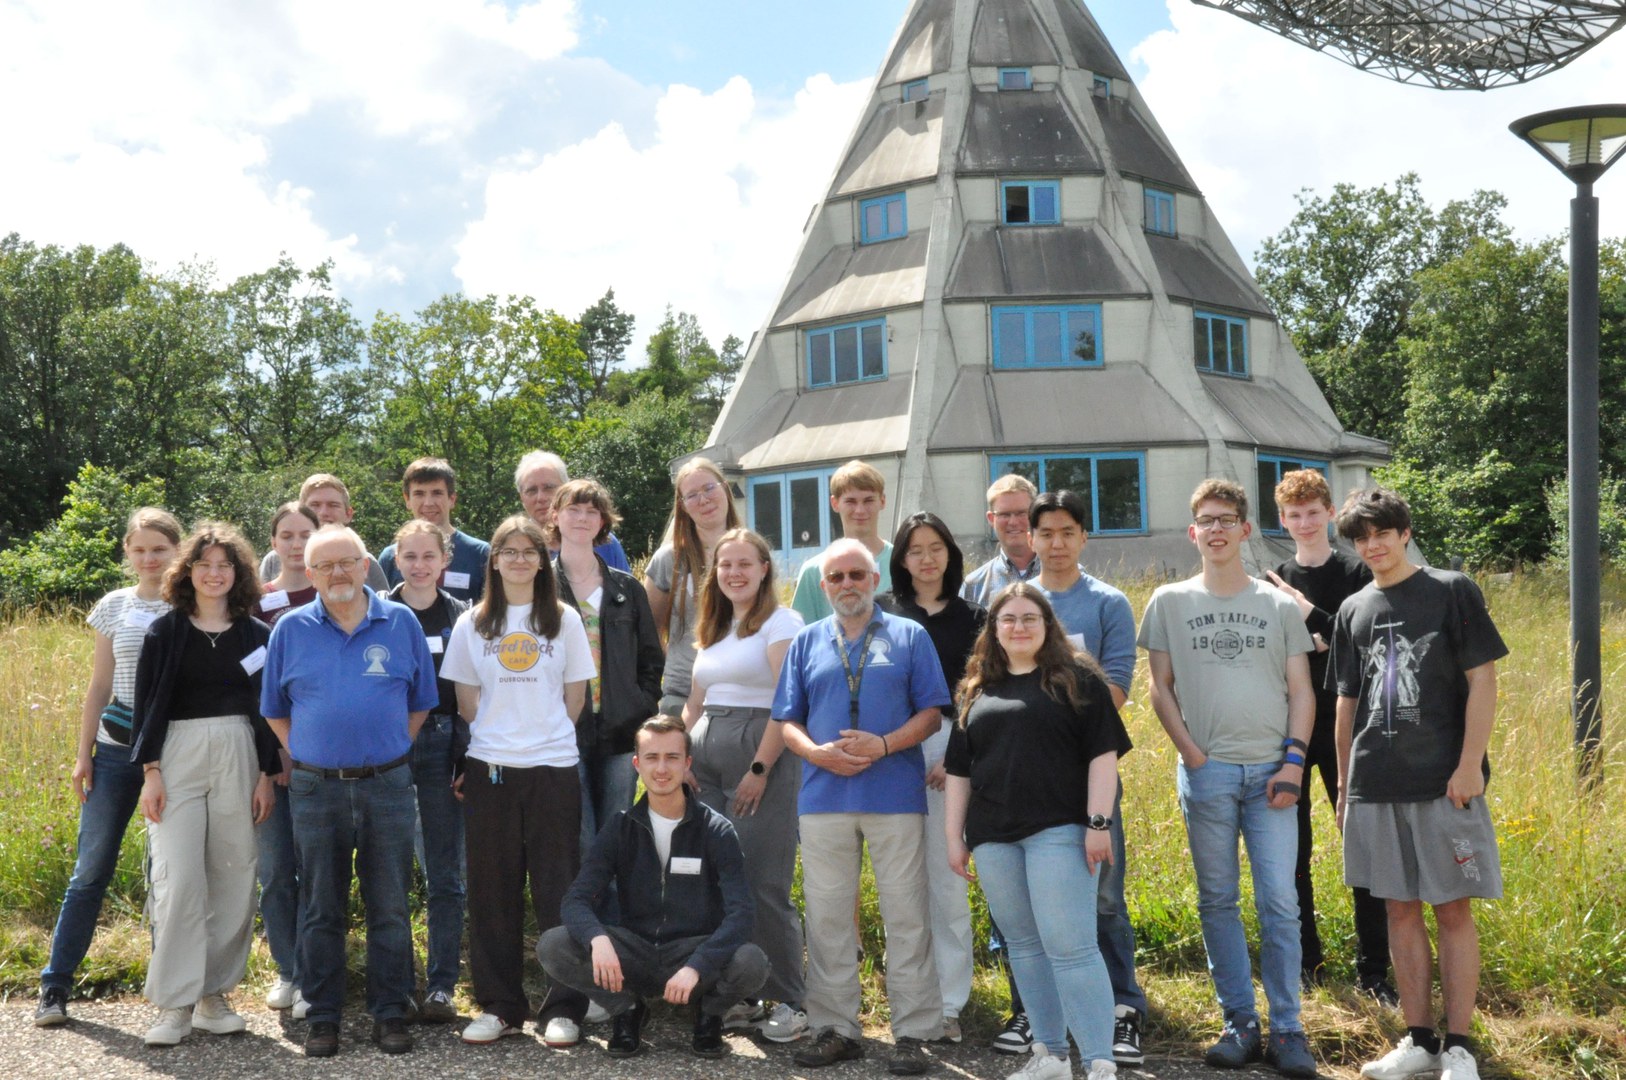 Teilnehmende und ehrenamtliche Mitarbeitende des Astropeilers vor dem 25-m-Radioteleskop – die Schülerinnen und Schüler konnten das Teleskop selber steuern und einen ersten Einblick in astronomische Messungen bekommen.